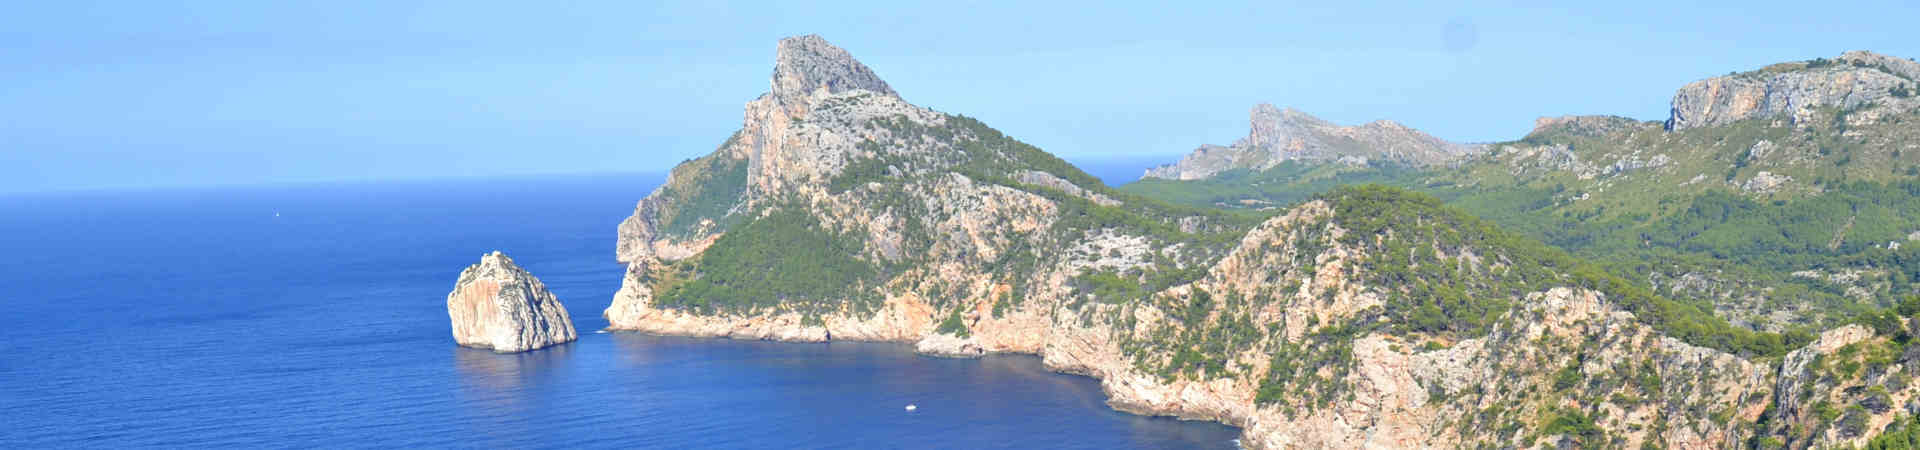 Imagen recurso del puerto de destino Mallorca (Palma) para la ruta en ferry Valencia - Mallorca (Palma)